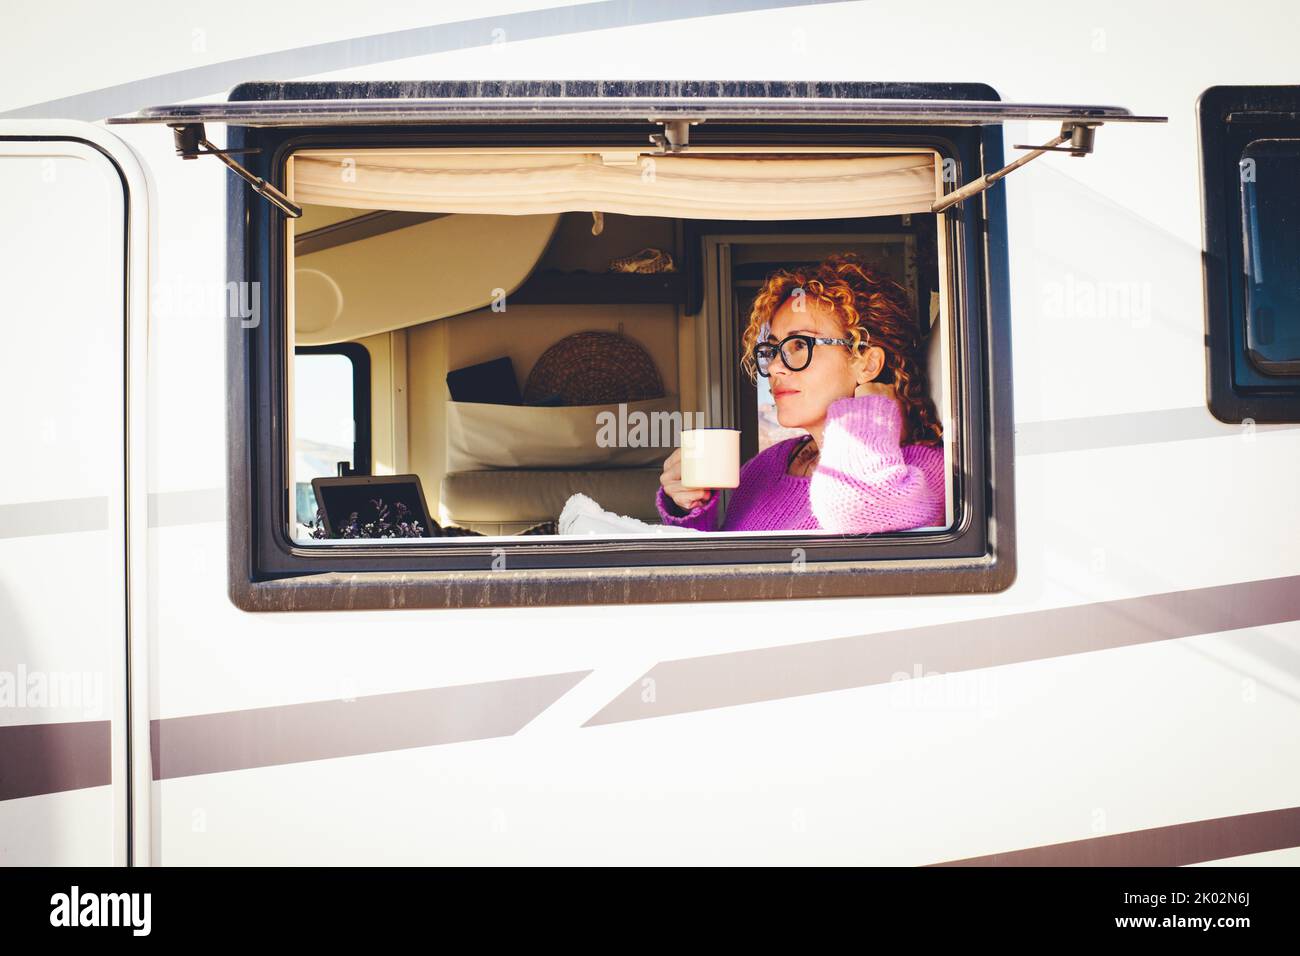 Vista exterior de una bonita mujer viajera que se relajaba dentro de su furgoneta campista vista desde la ventana. Vehículo reanting vacaciones y van vida de las personas de estilo de vida. Mujeres serenas en rv Foto de stock